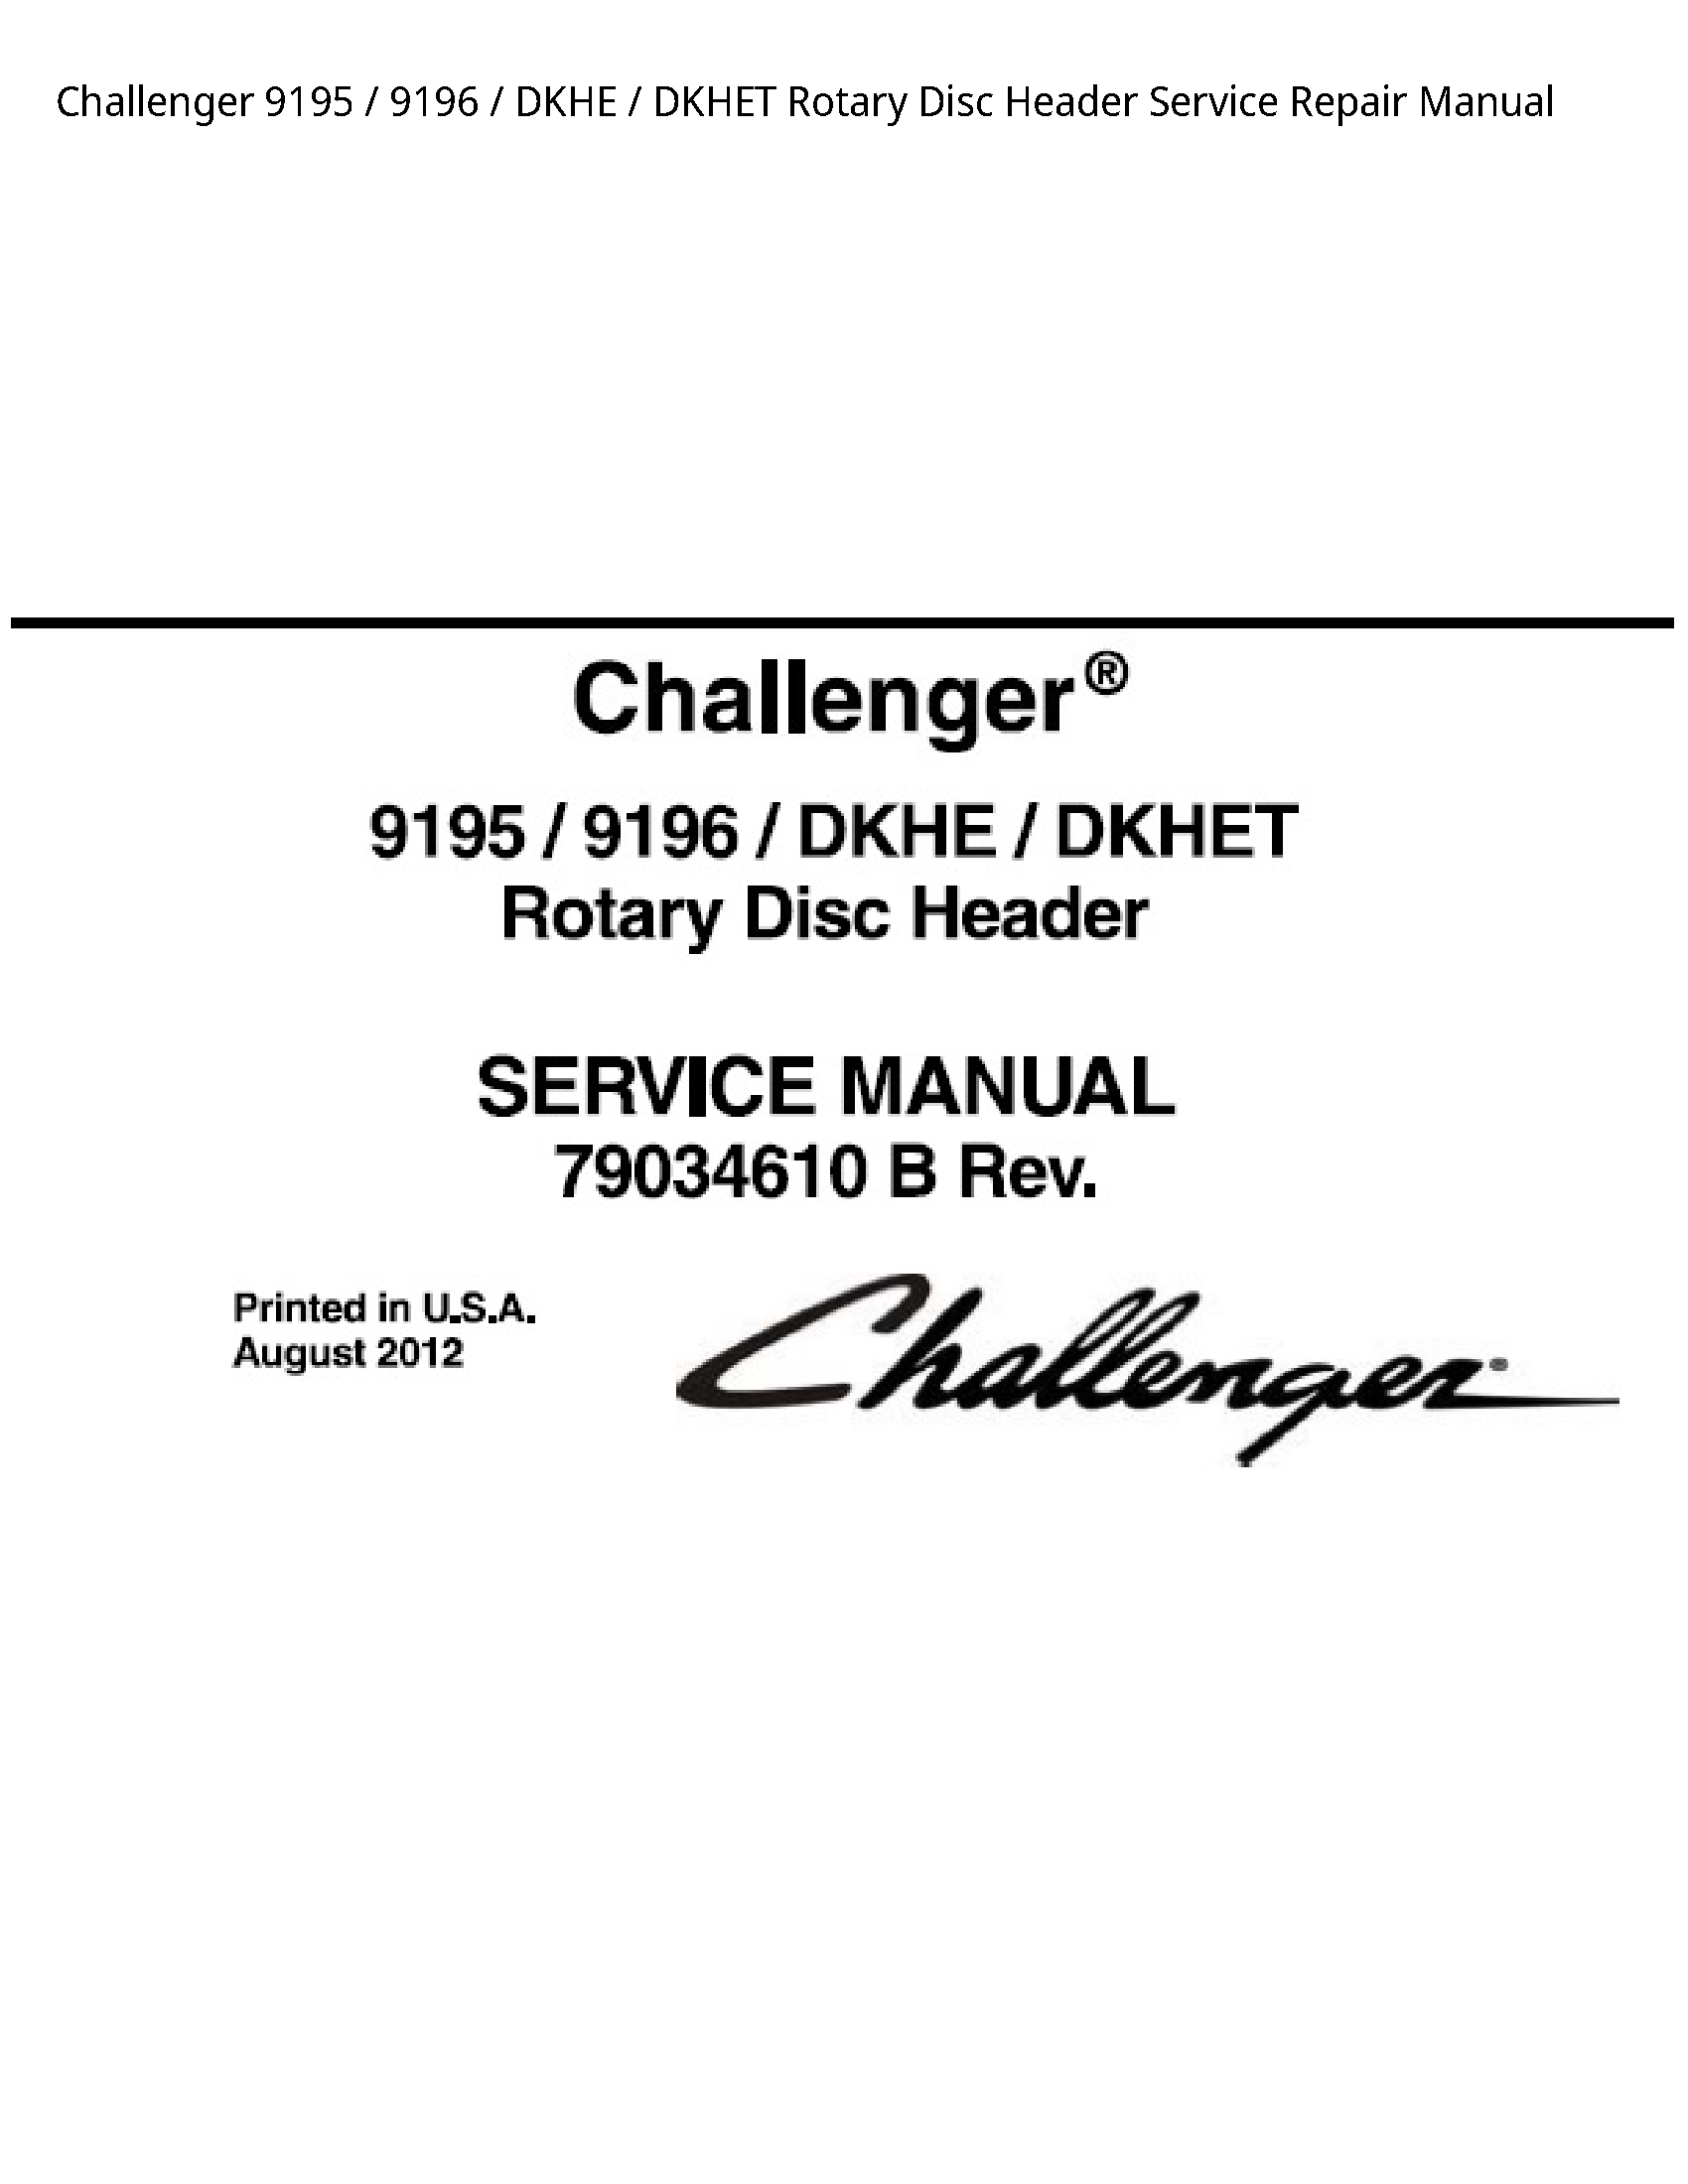 Challenger 9195 DKHE DKHET Rotary Disc Header manual